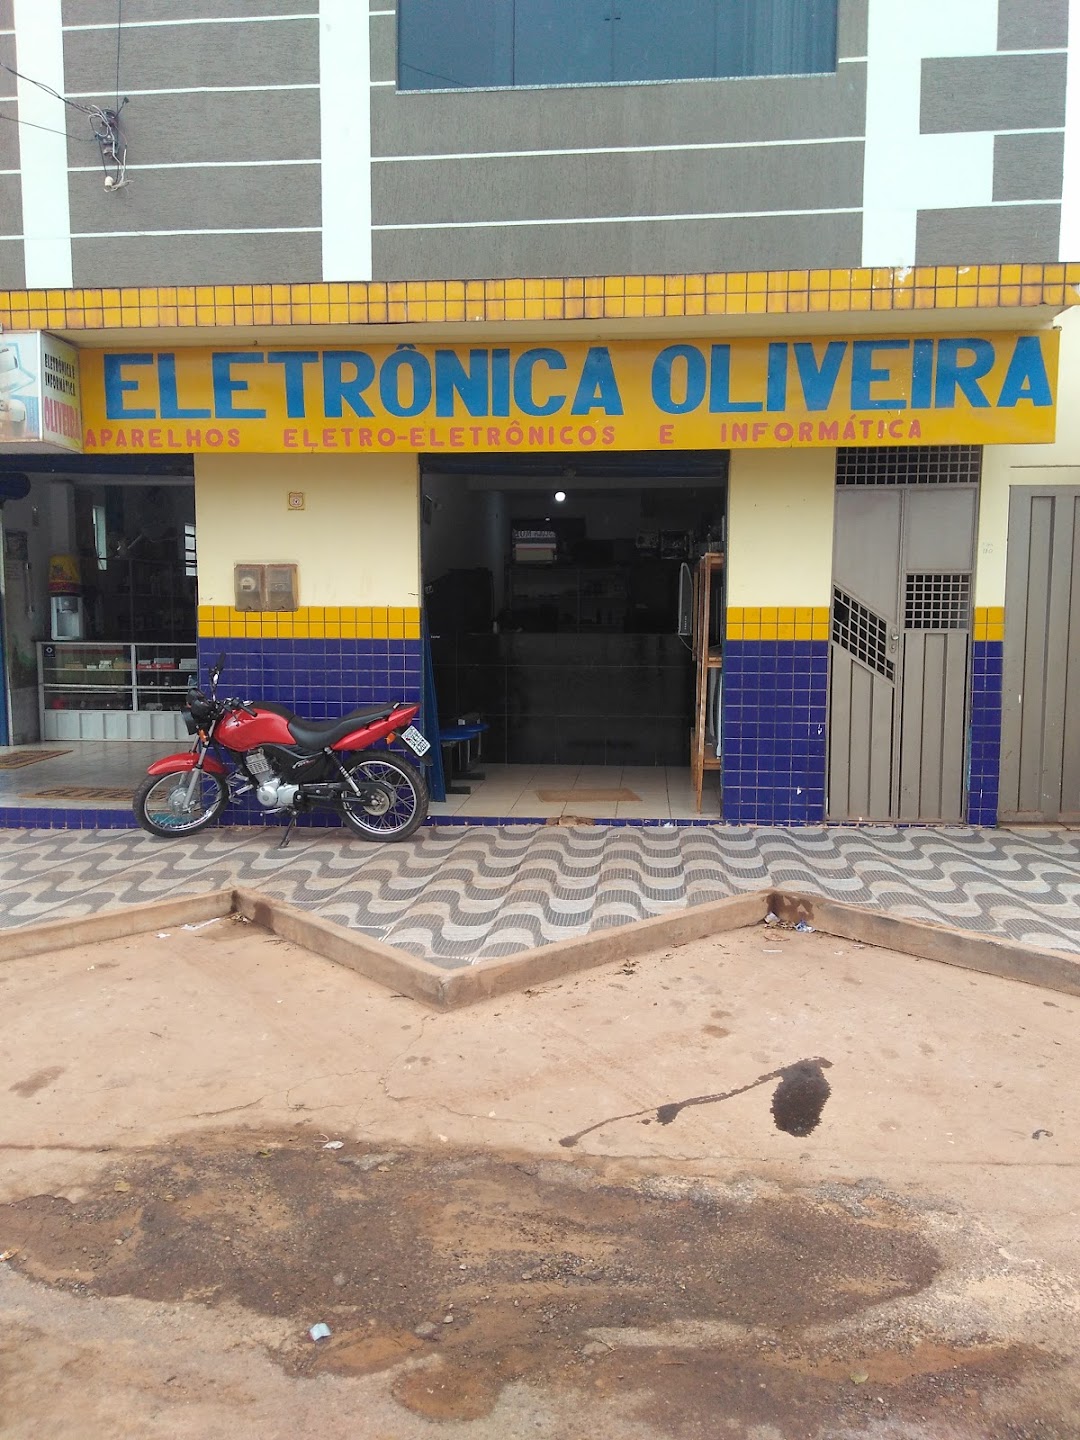 Informática & Eletrônica Oliveira